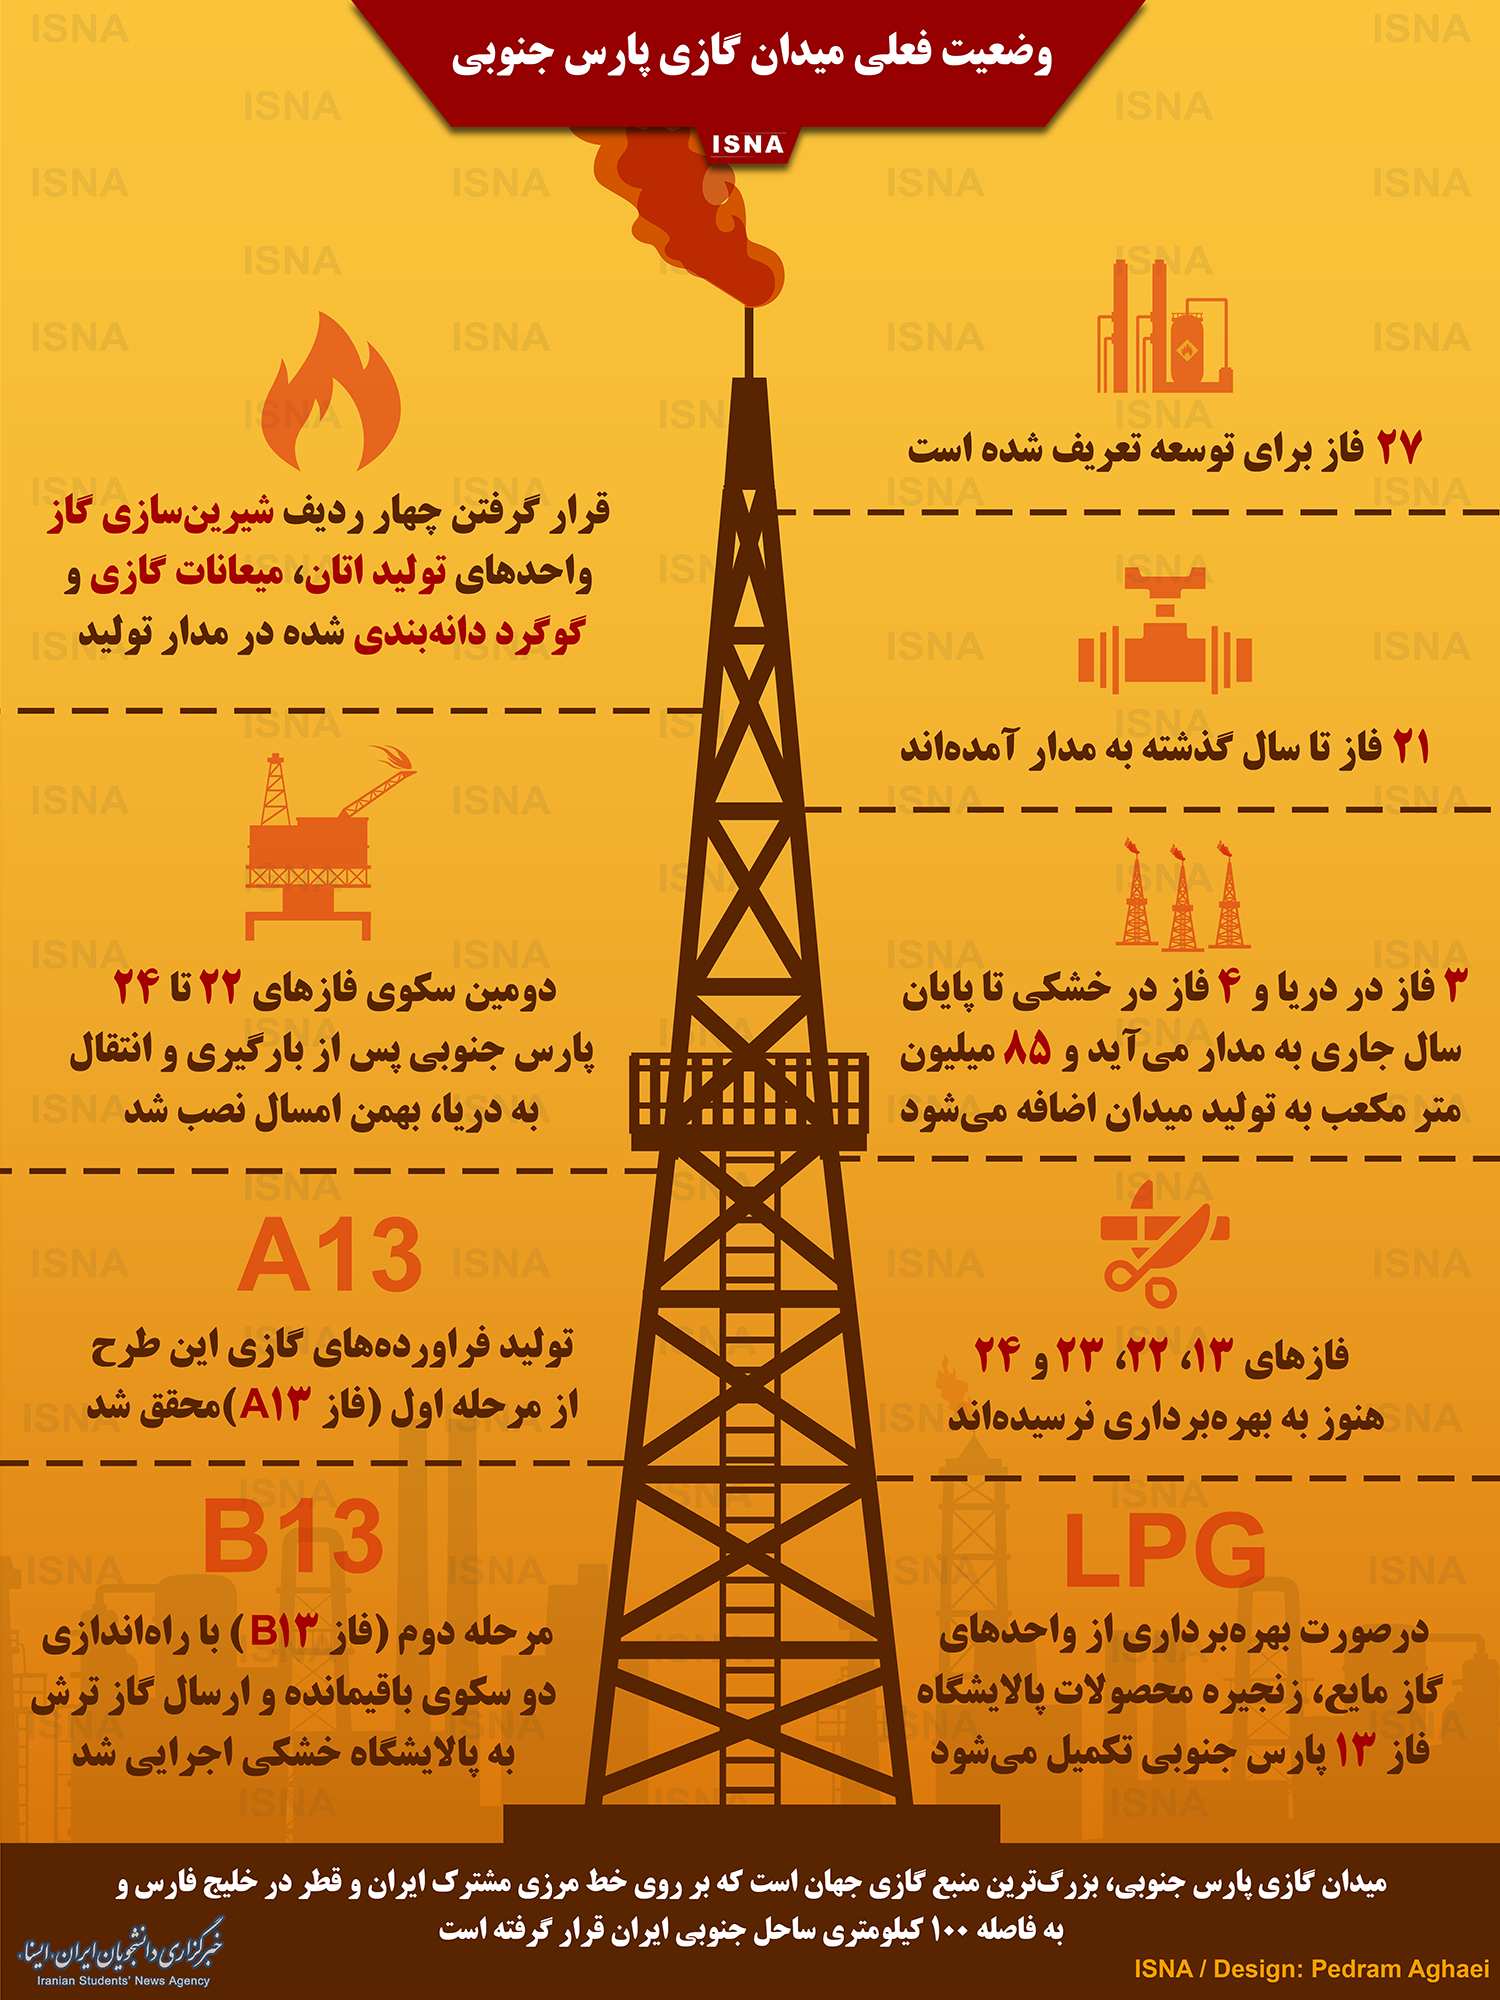 اینفوگرافیک ایران در بزرگترین منبع گازی جهان